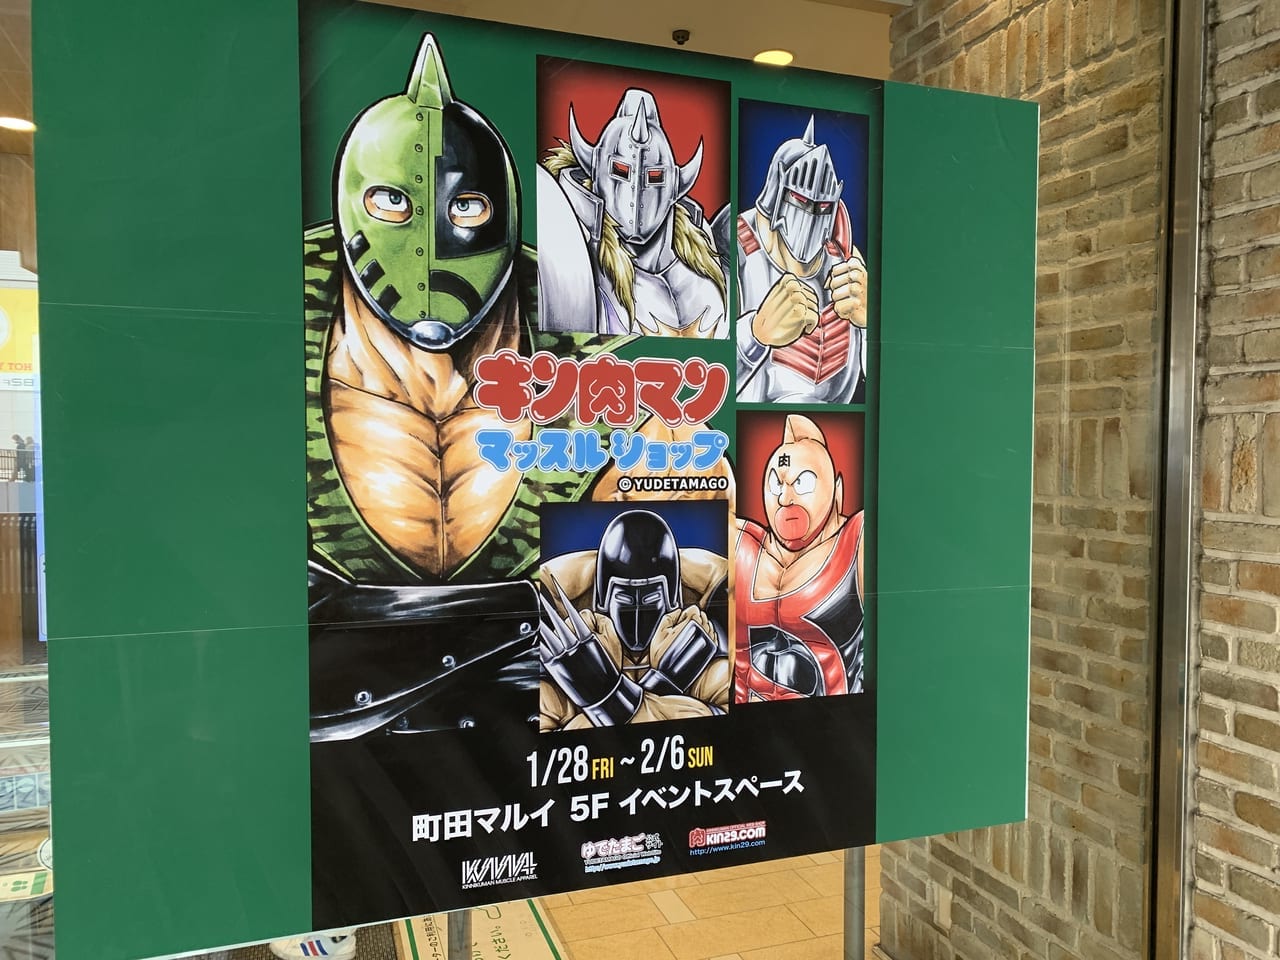 キン肉マンオフィシャルグッズ町田マルイ5階開催中のポスター